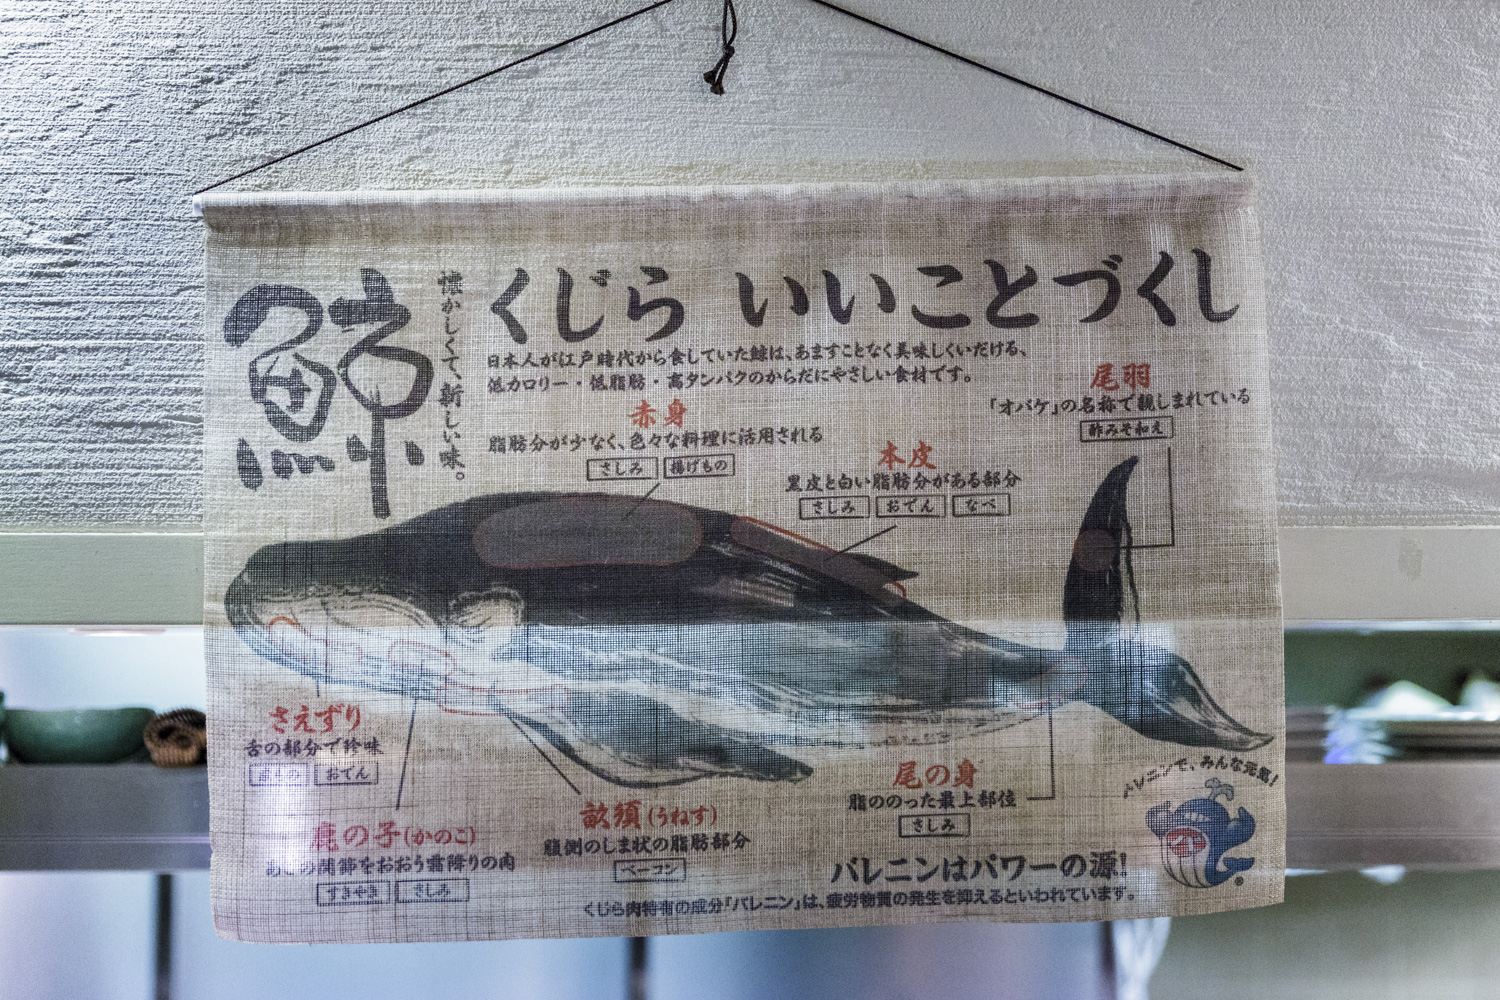  japon baleine